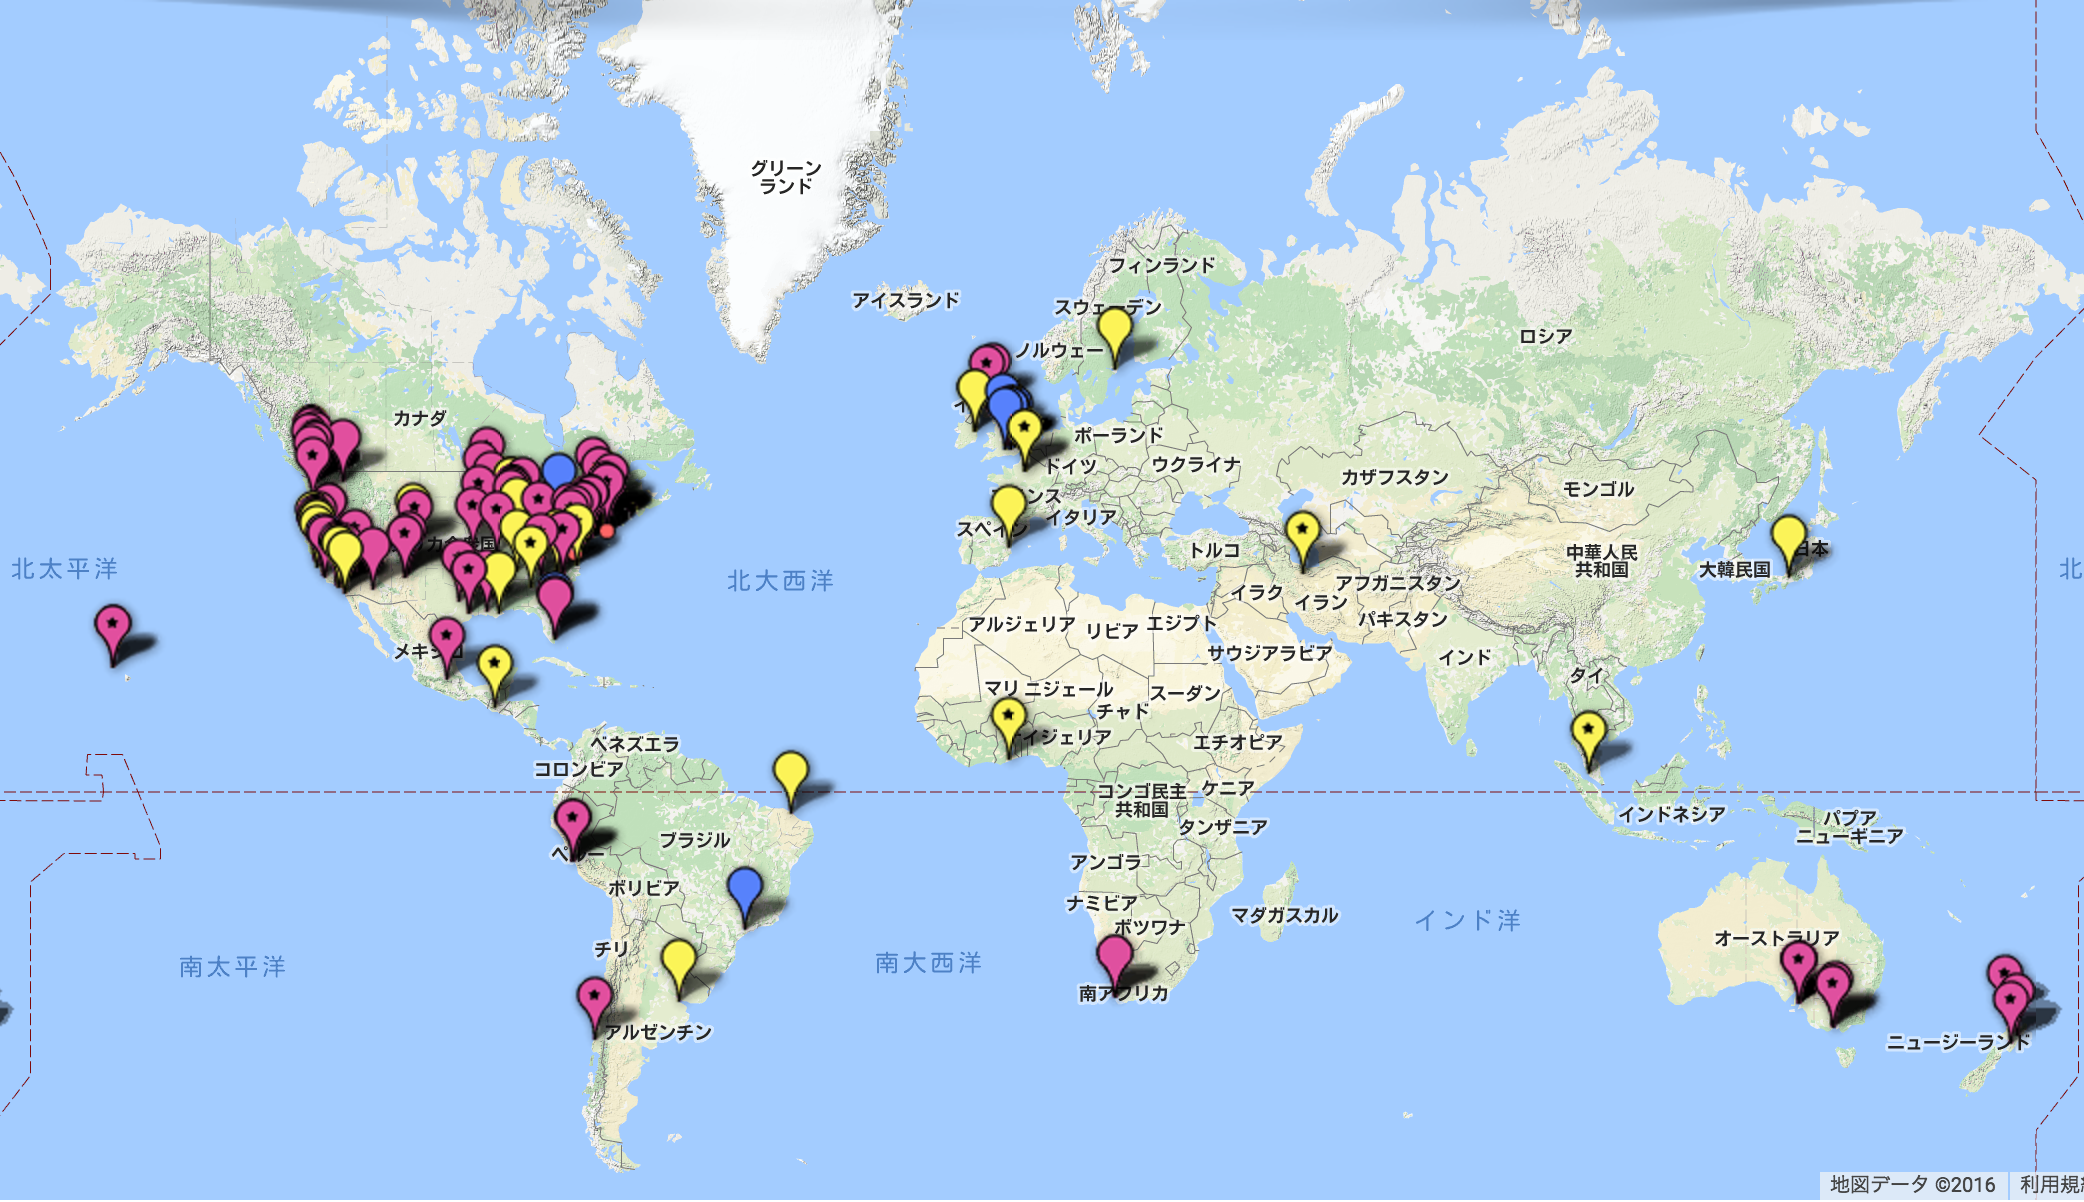 世界中で広がりを見せている。ピンクがパークレットプログラムを示す。（Pavement to Parks Program HPより;http://pavementtoparks.org/resources/map-of-projects-in-san-francisco/）